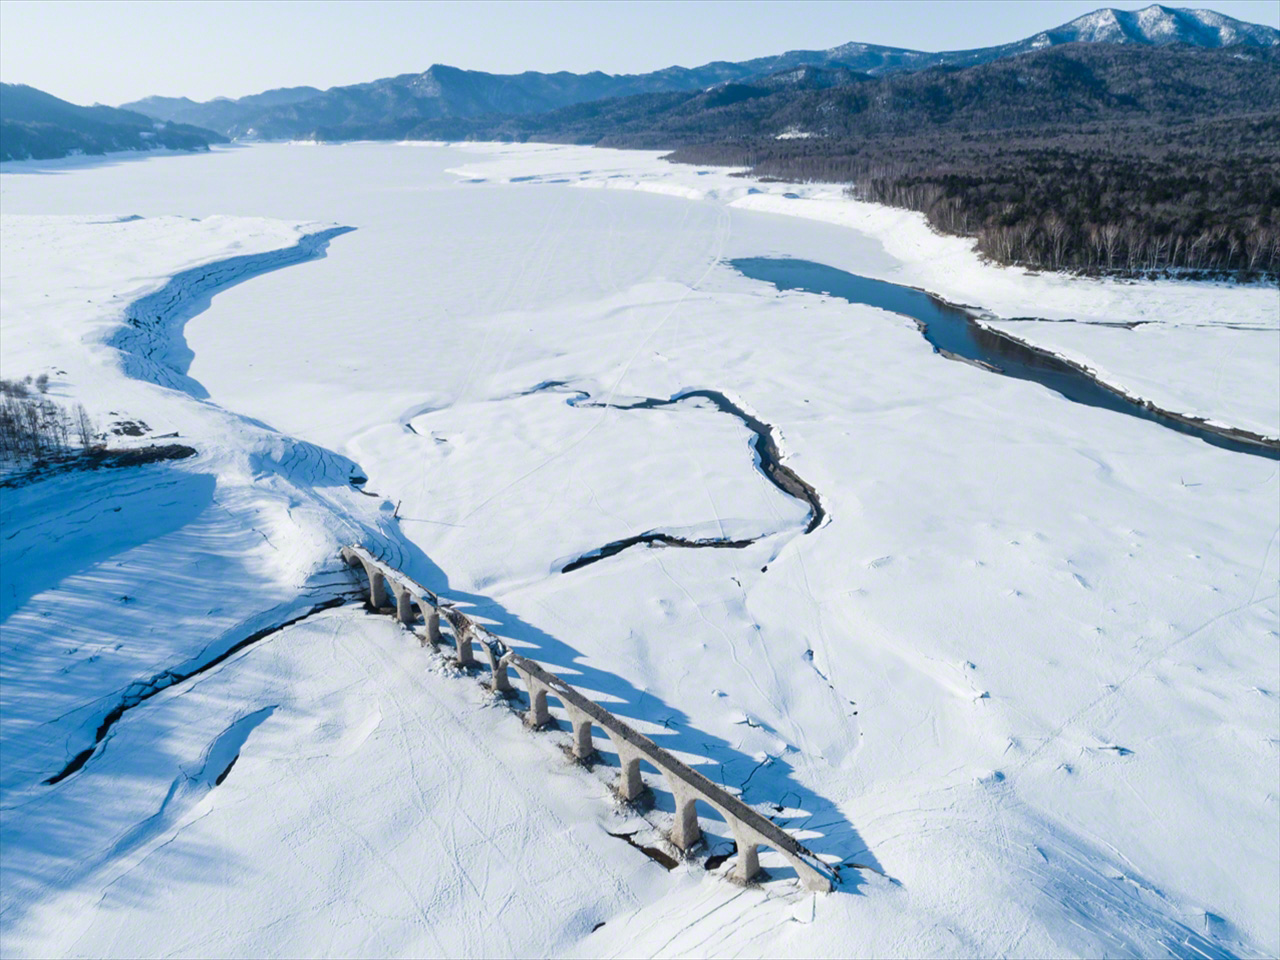 في مارس/ آذار، يكسو الجليد والثلوج بحيرة نوكابيرا. ويُرى نهر أوتوفوكى وهو يتدفق على اليمين.